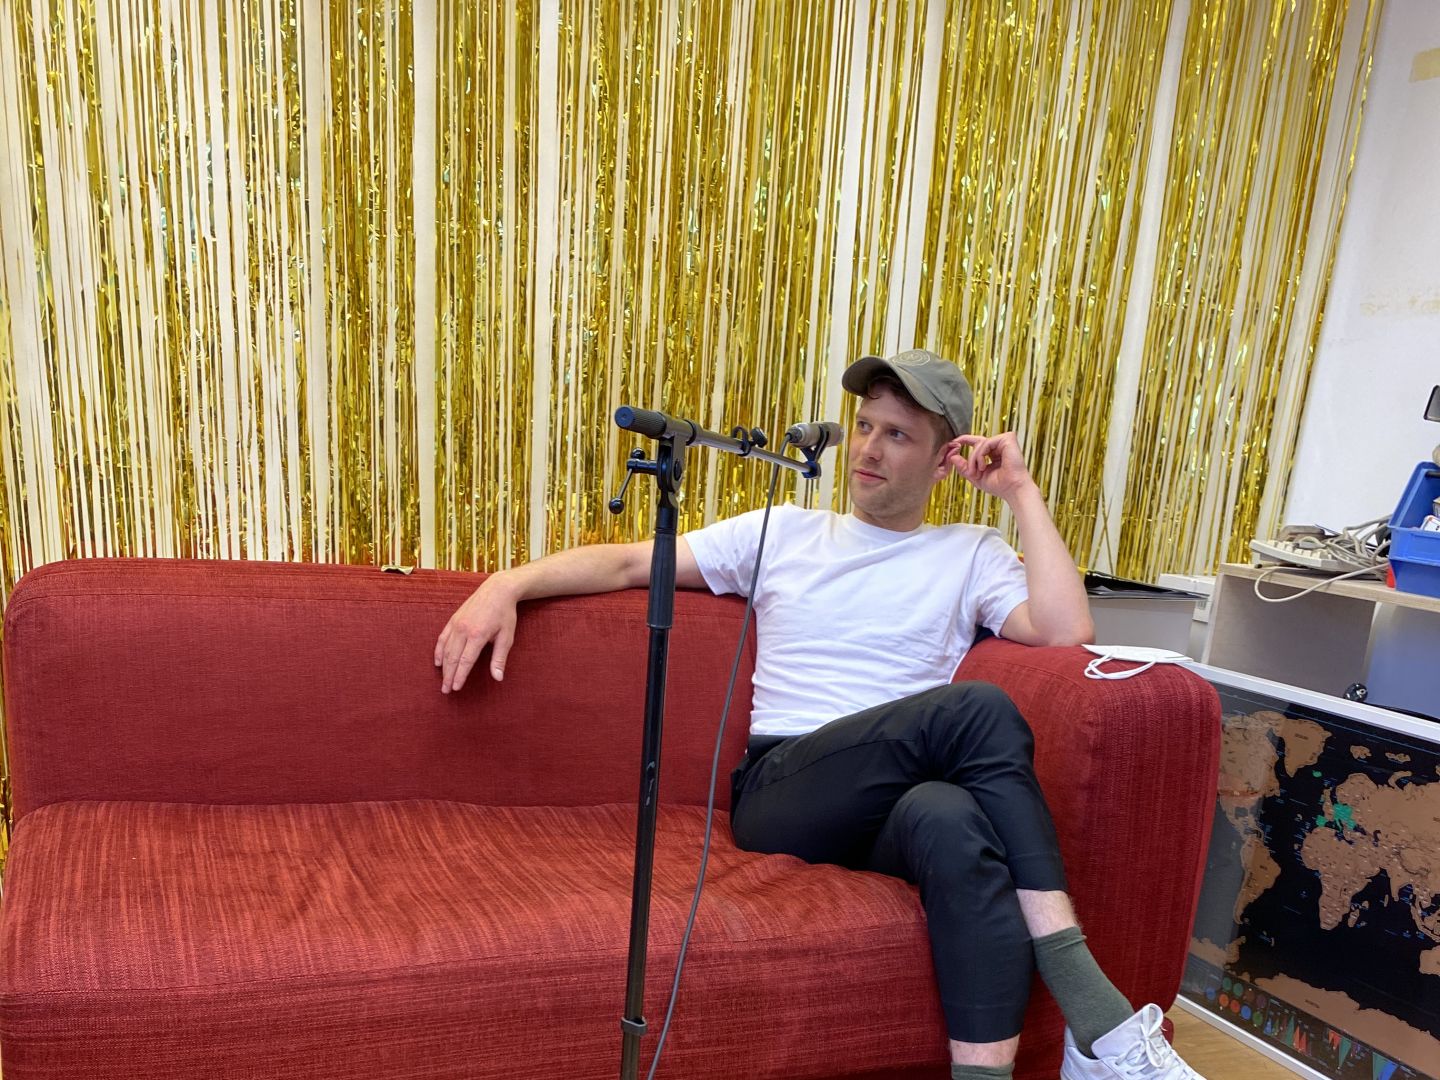 Silas Breiding sitzt auf einem roten Sofa